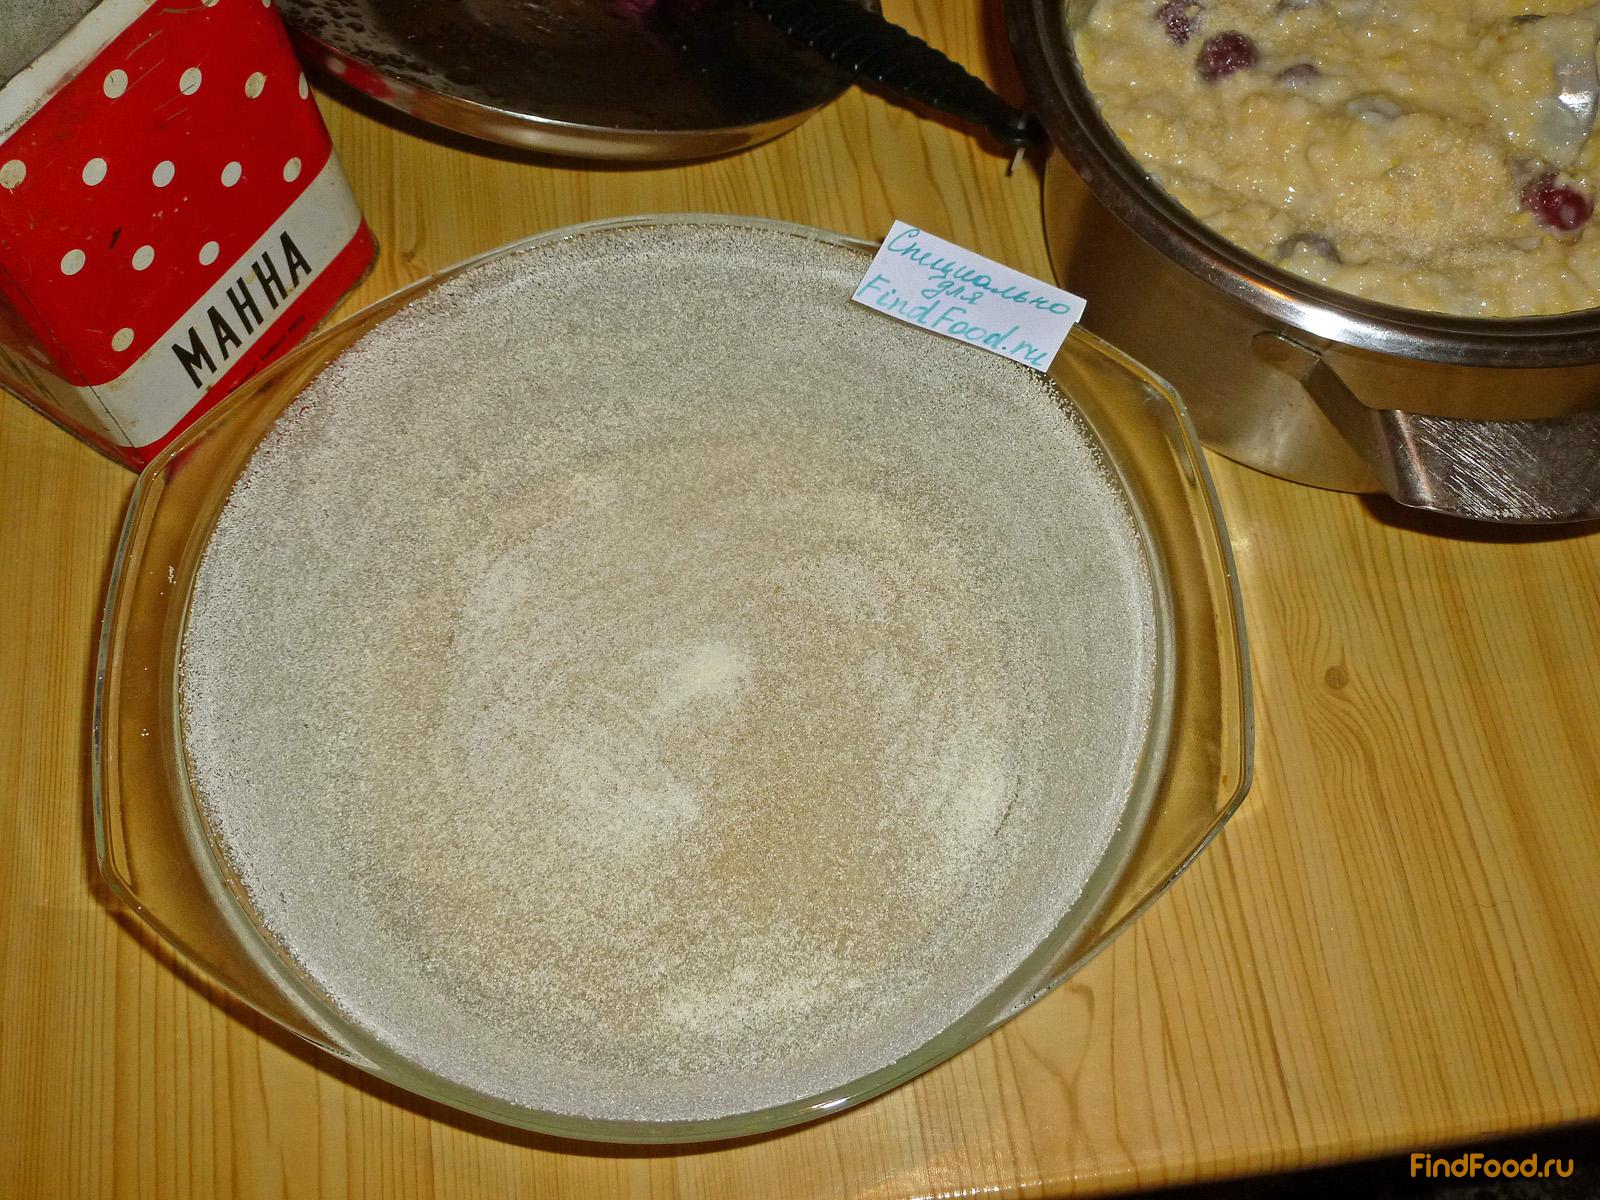 Крупеник из риса и пшена с вишней рецепт с фото 4-го шага 